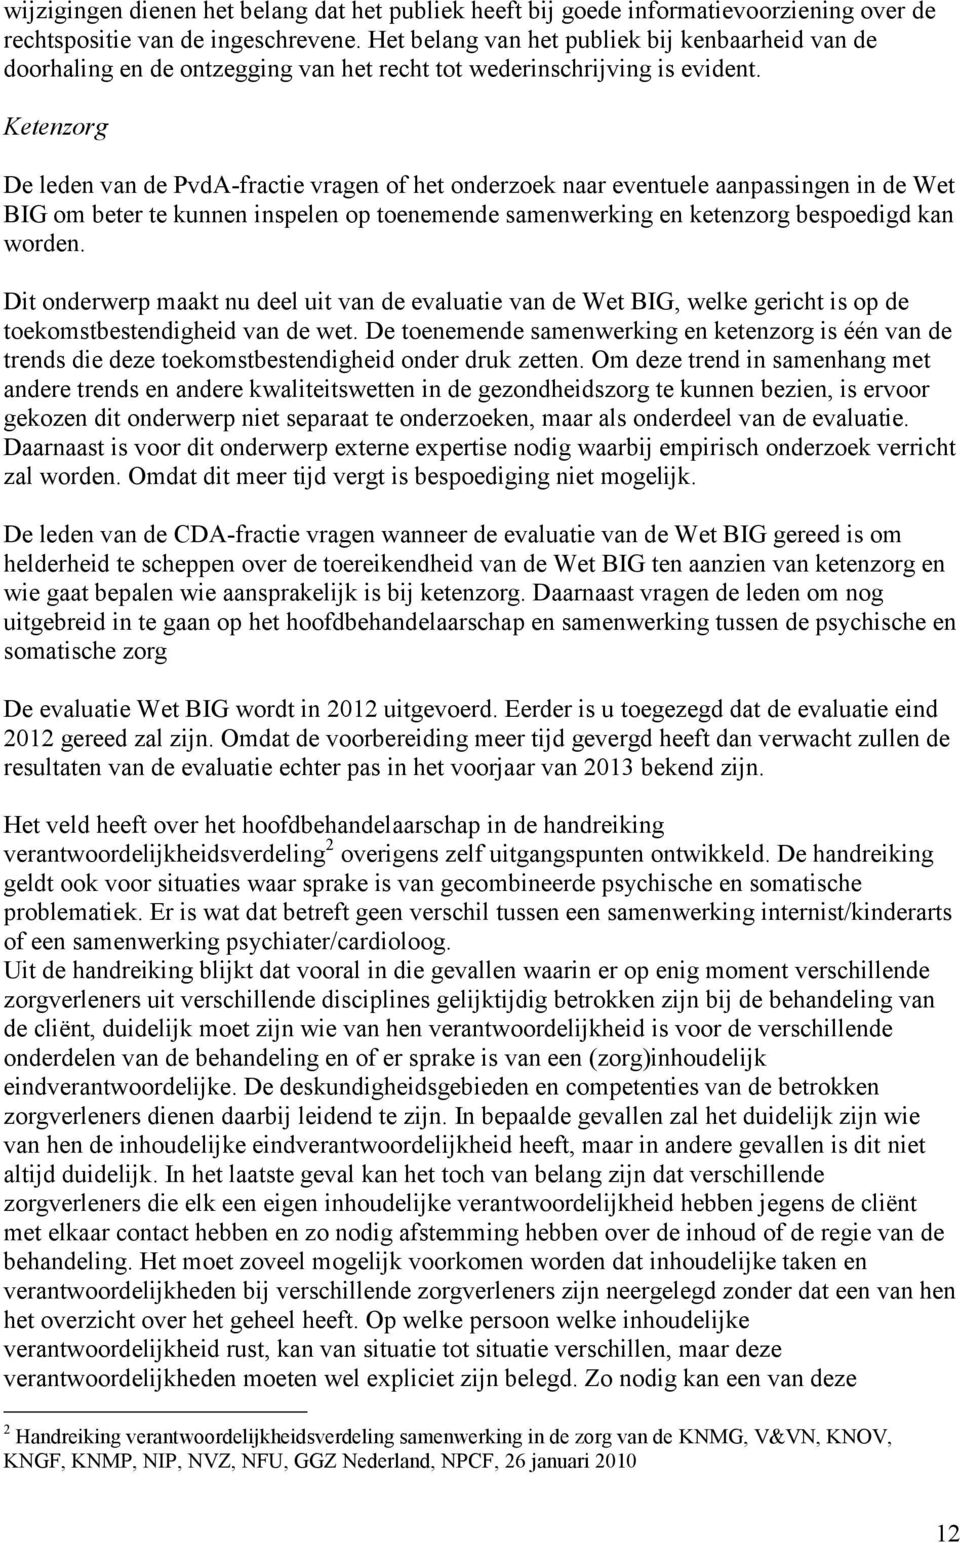 Ketenzorg De leden van de PvdA-fractie vragen of het onderzoek naar eventuele aanpassingen in de Wet BIG om beter te kunnen inspelen op toenemende samenwerking en ketenzorg bespoedigd kan worden.